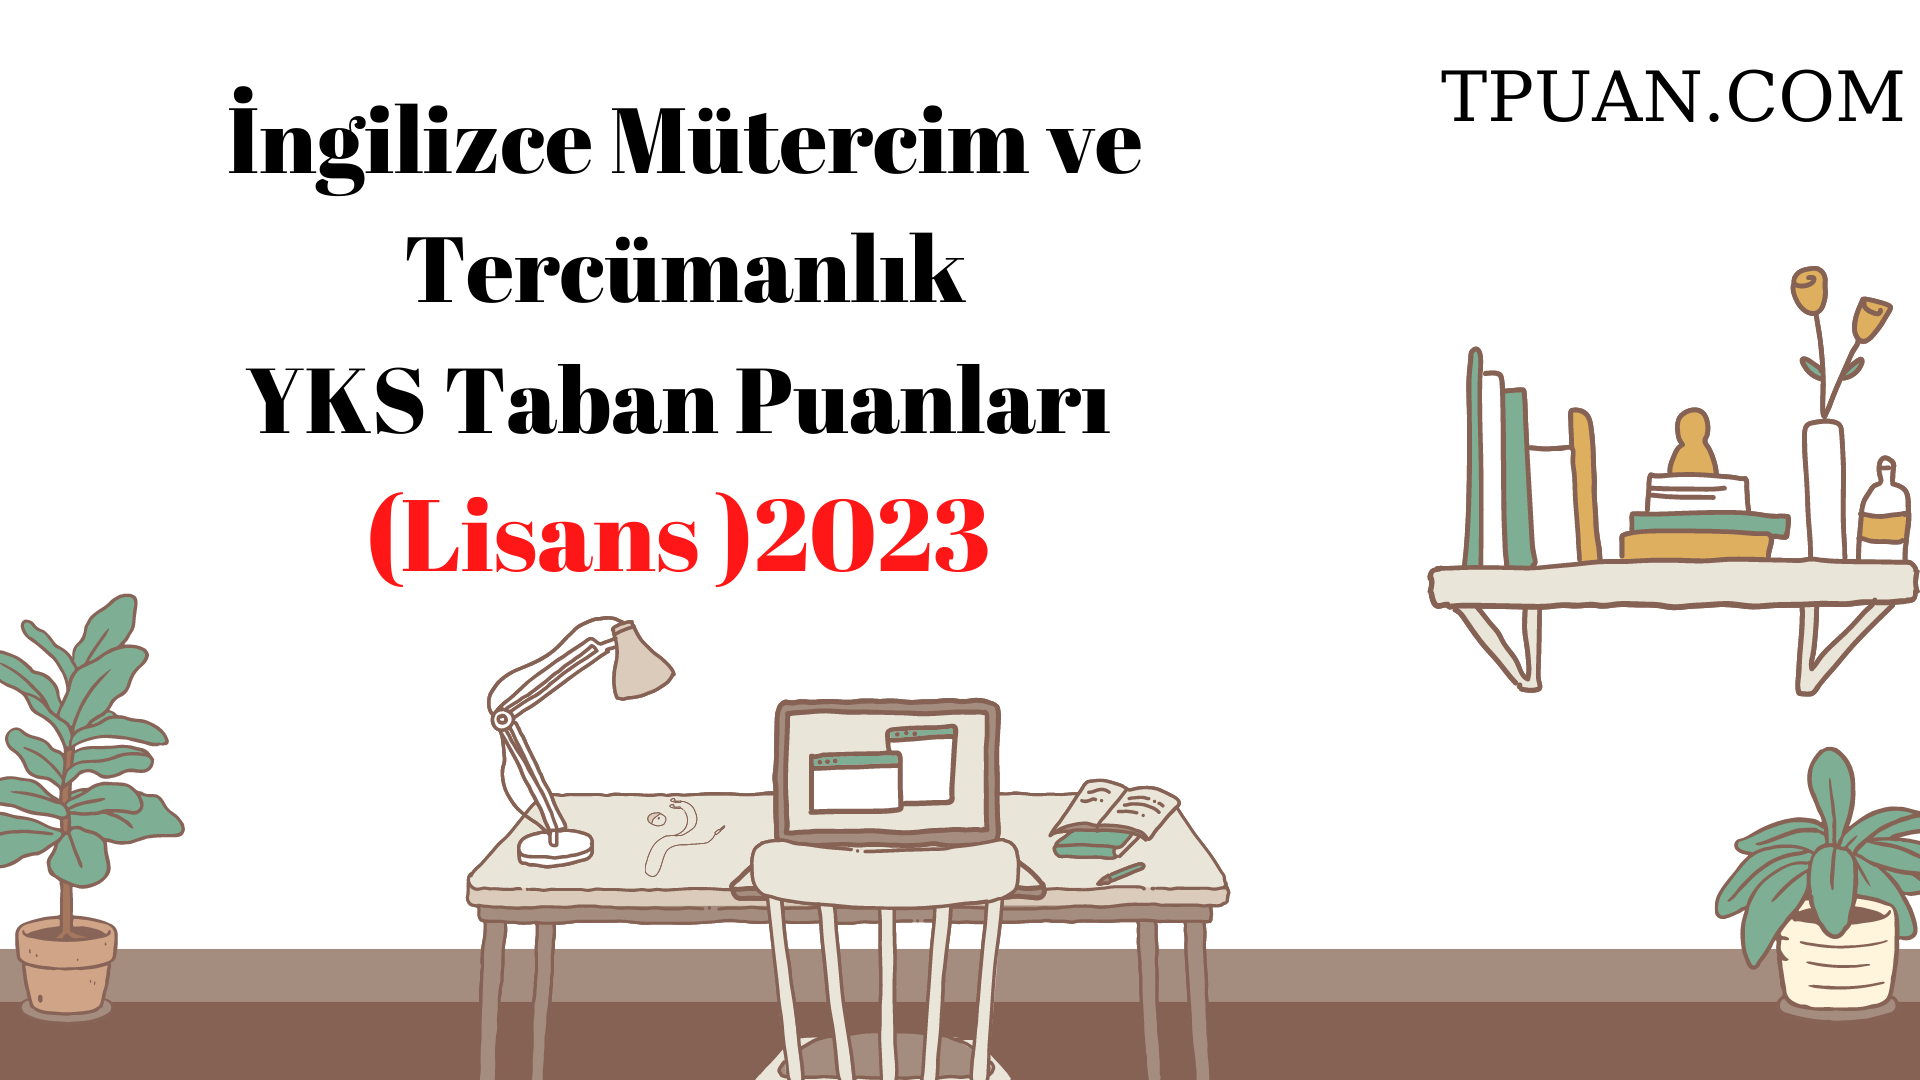  İngilizce Mütercim ve Tercümanlık Bölümü YKS Taban Puanları (4 Yıllık) 2023